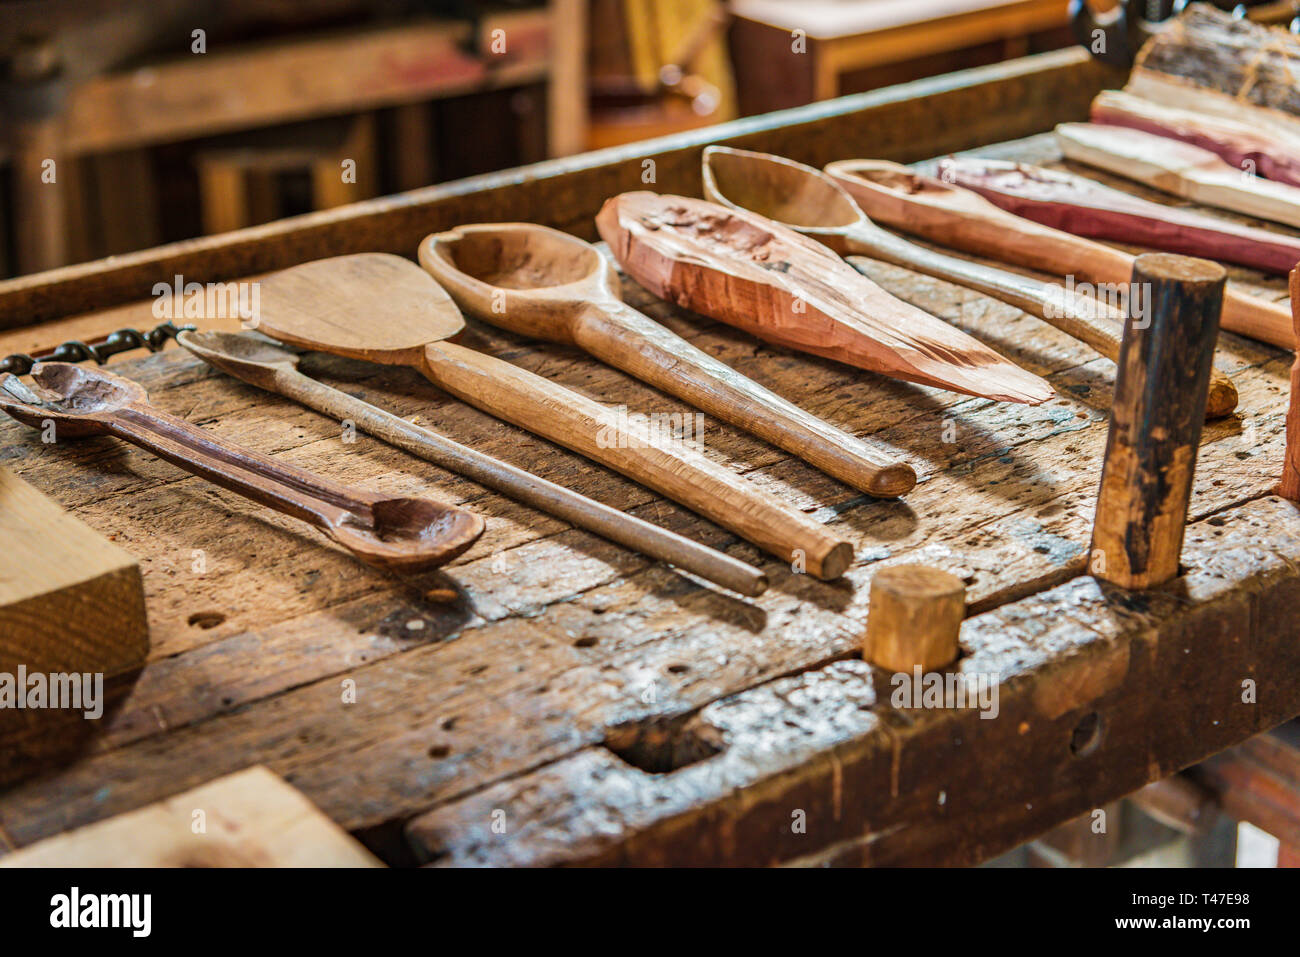 Antichi utensili da cucina in legno su tavolo in legno Foto Stock